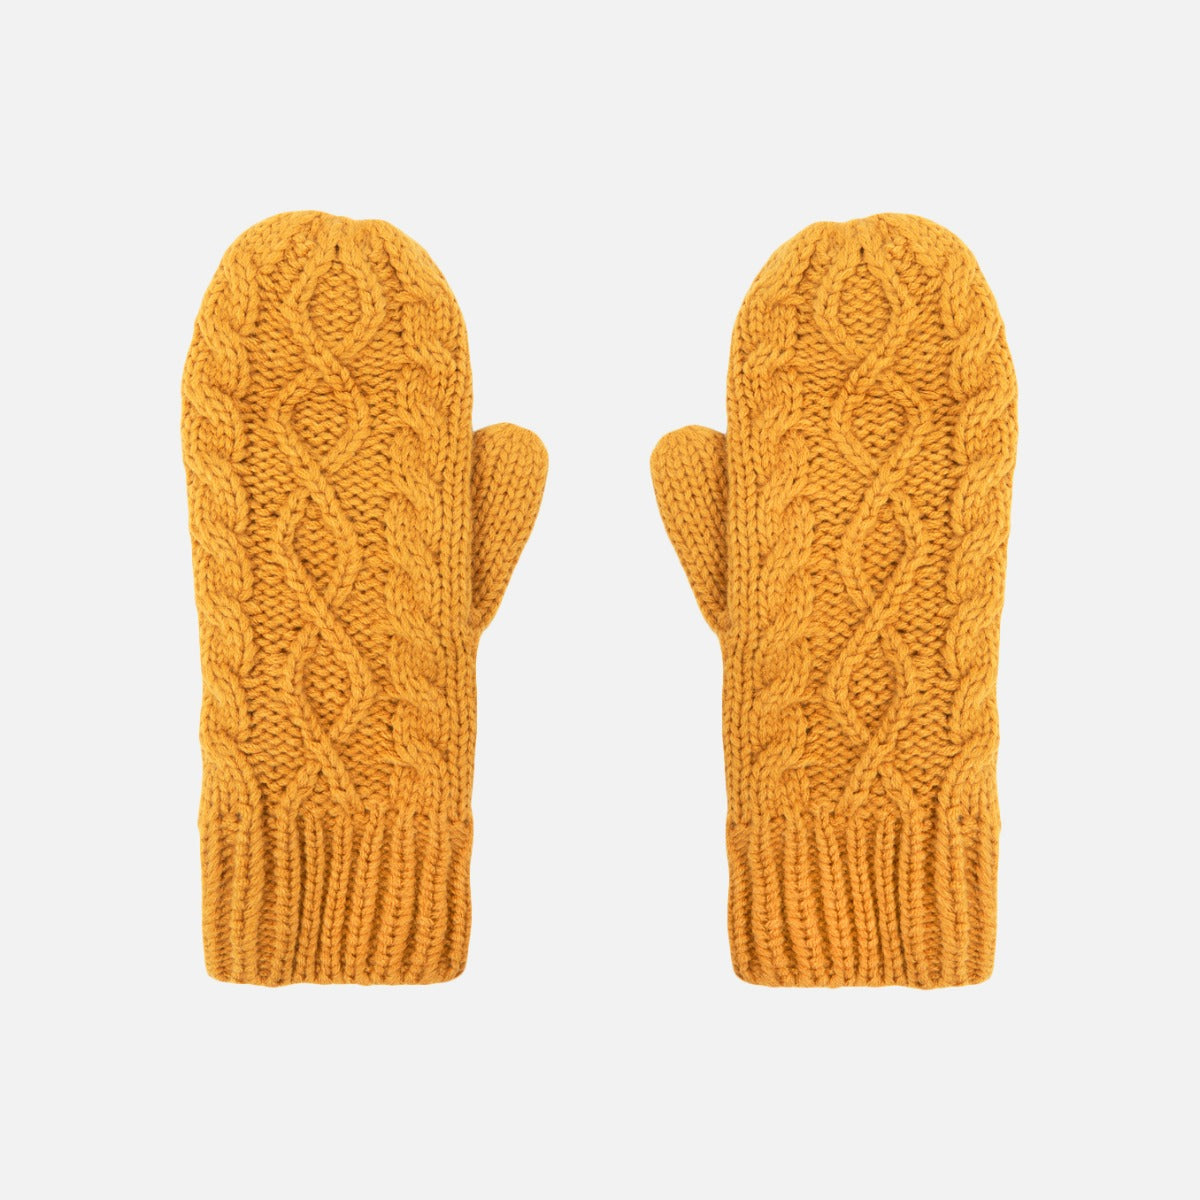 Ocher yellow knit mittens   